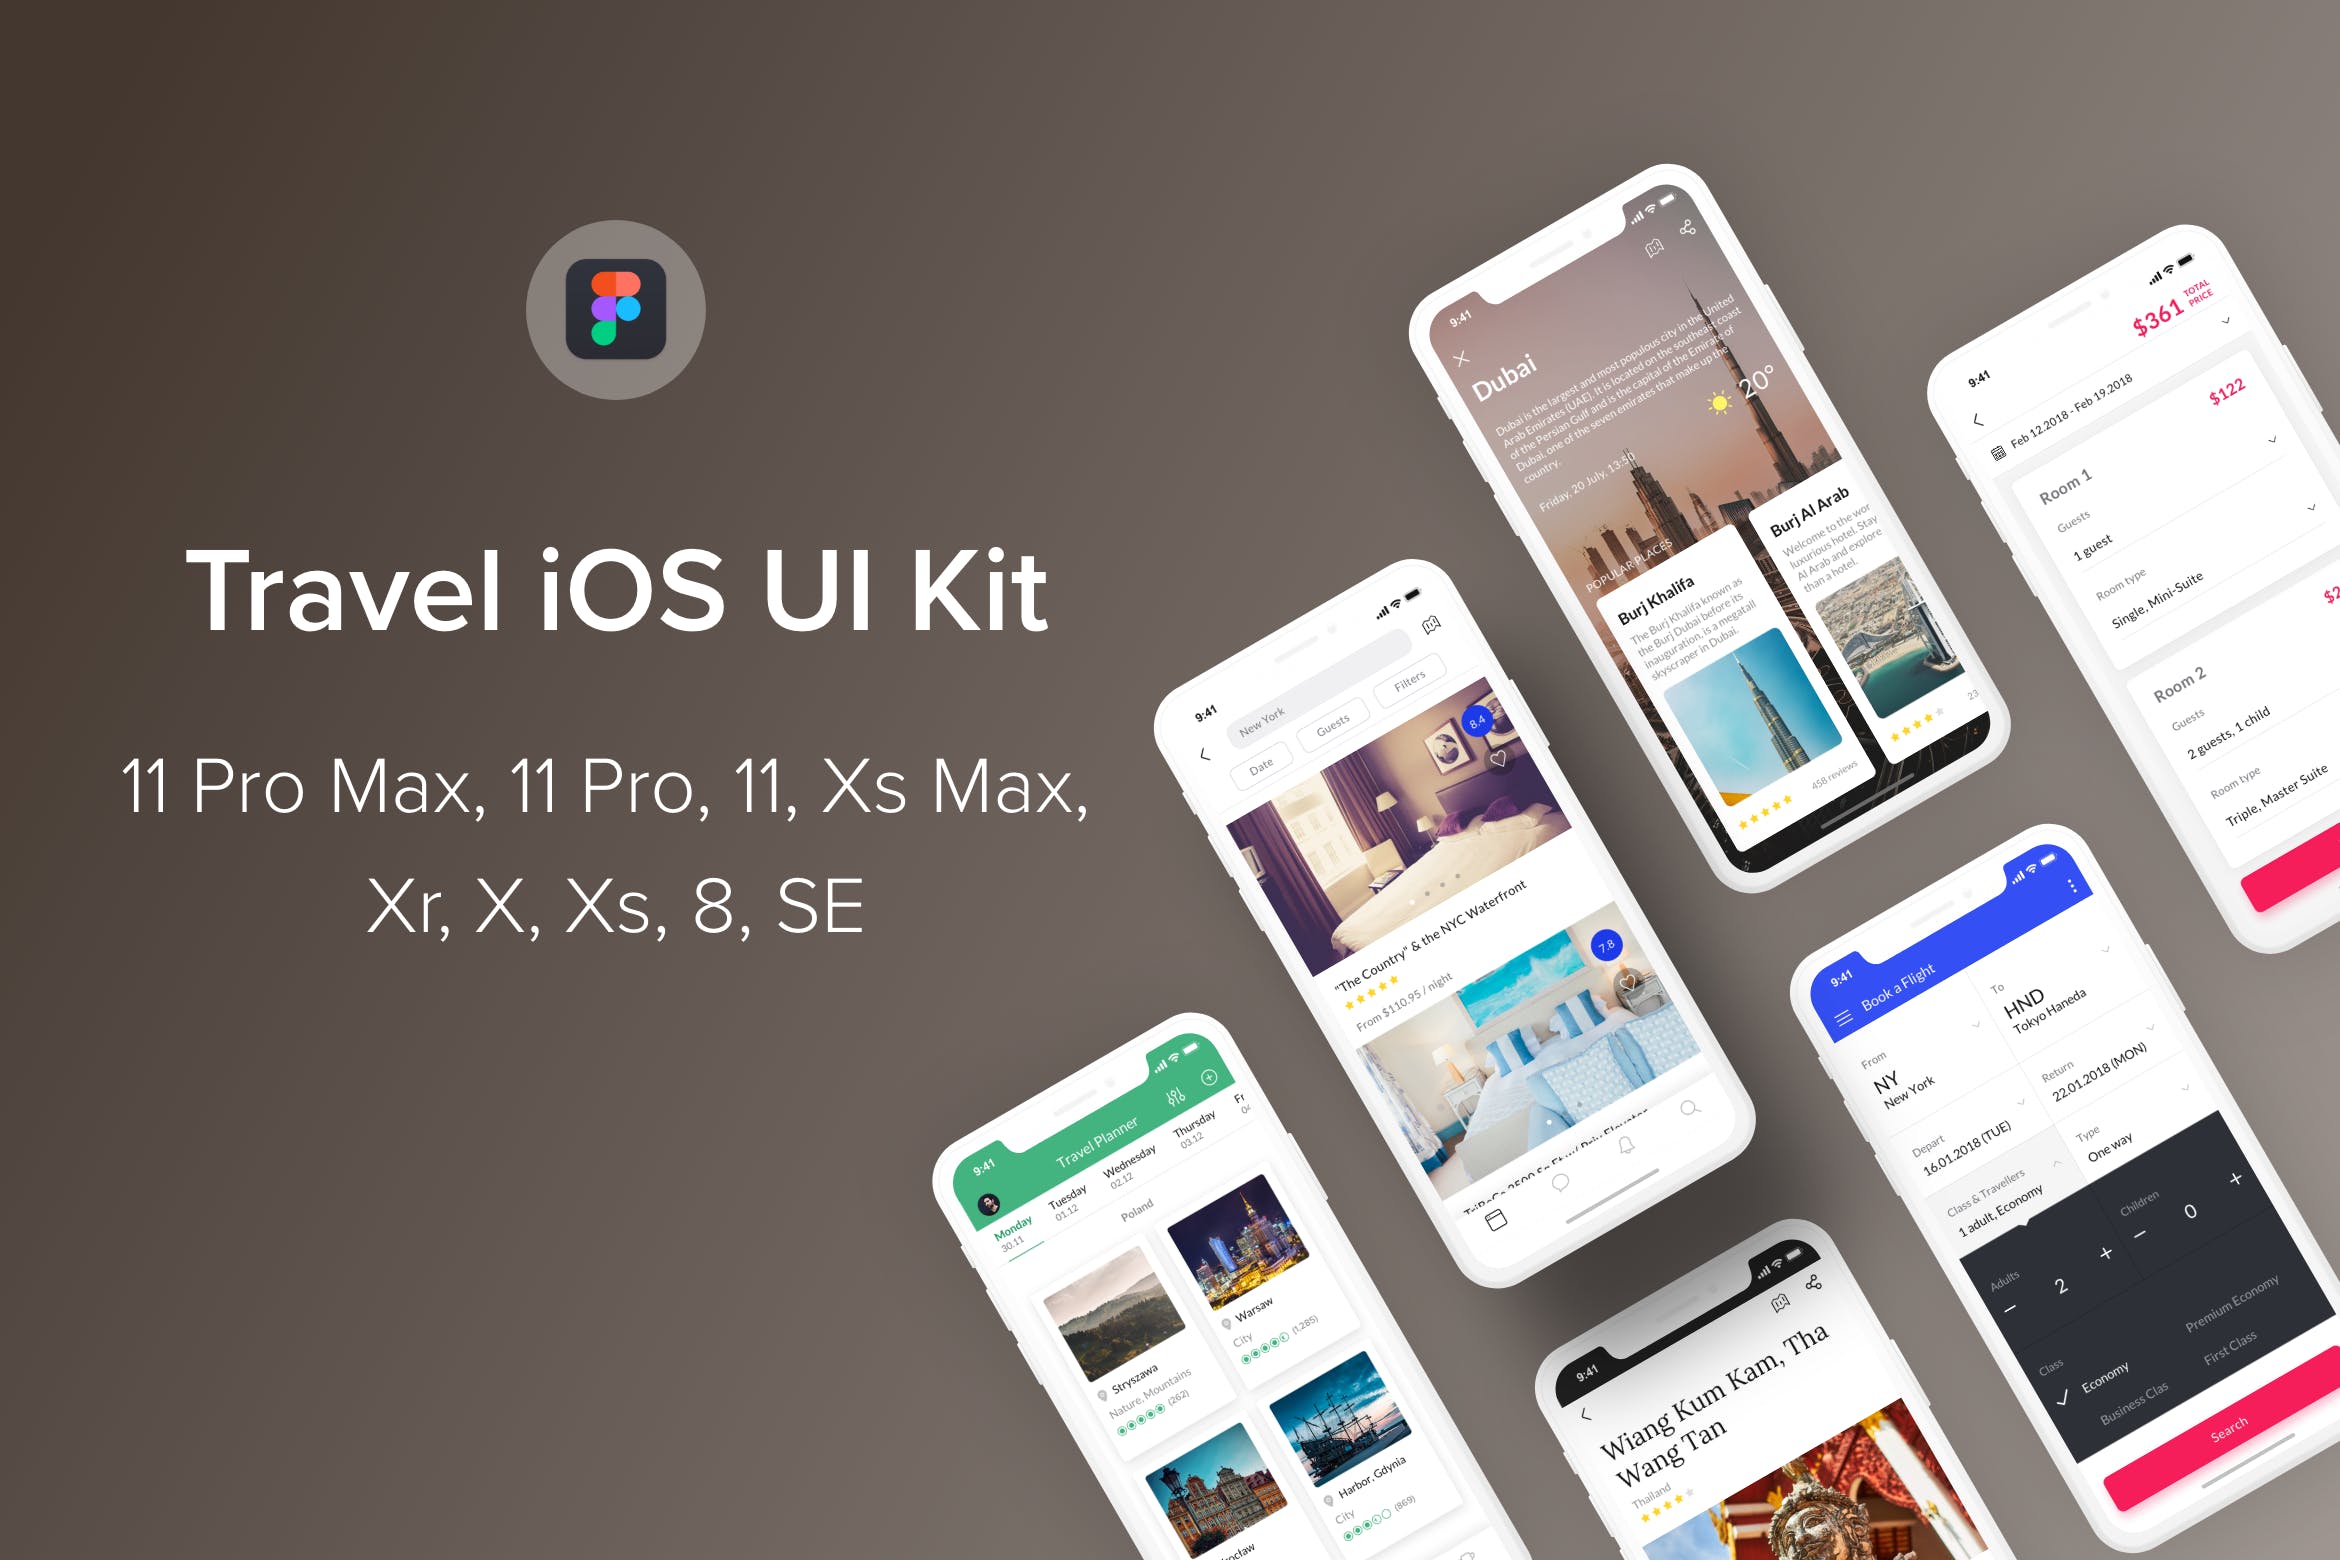 旅游主题iOS应用UI设计第一素材精选套件Figma模板 Travel iOS UI Kit (Figma)插图